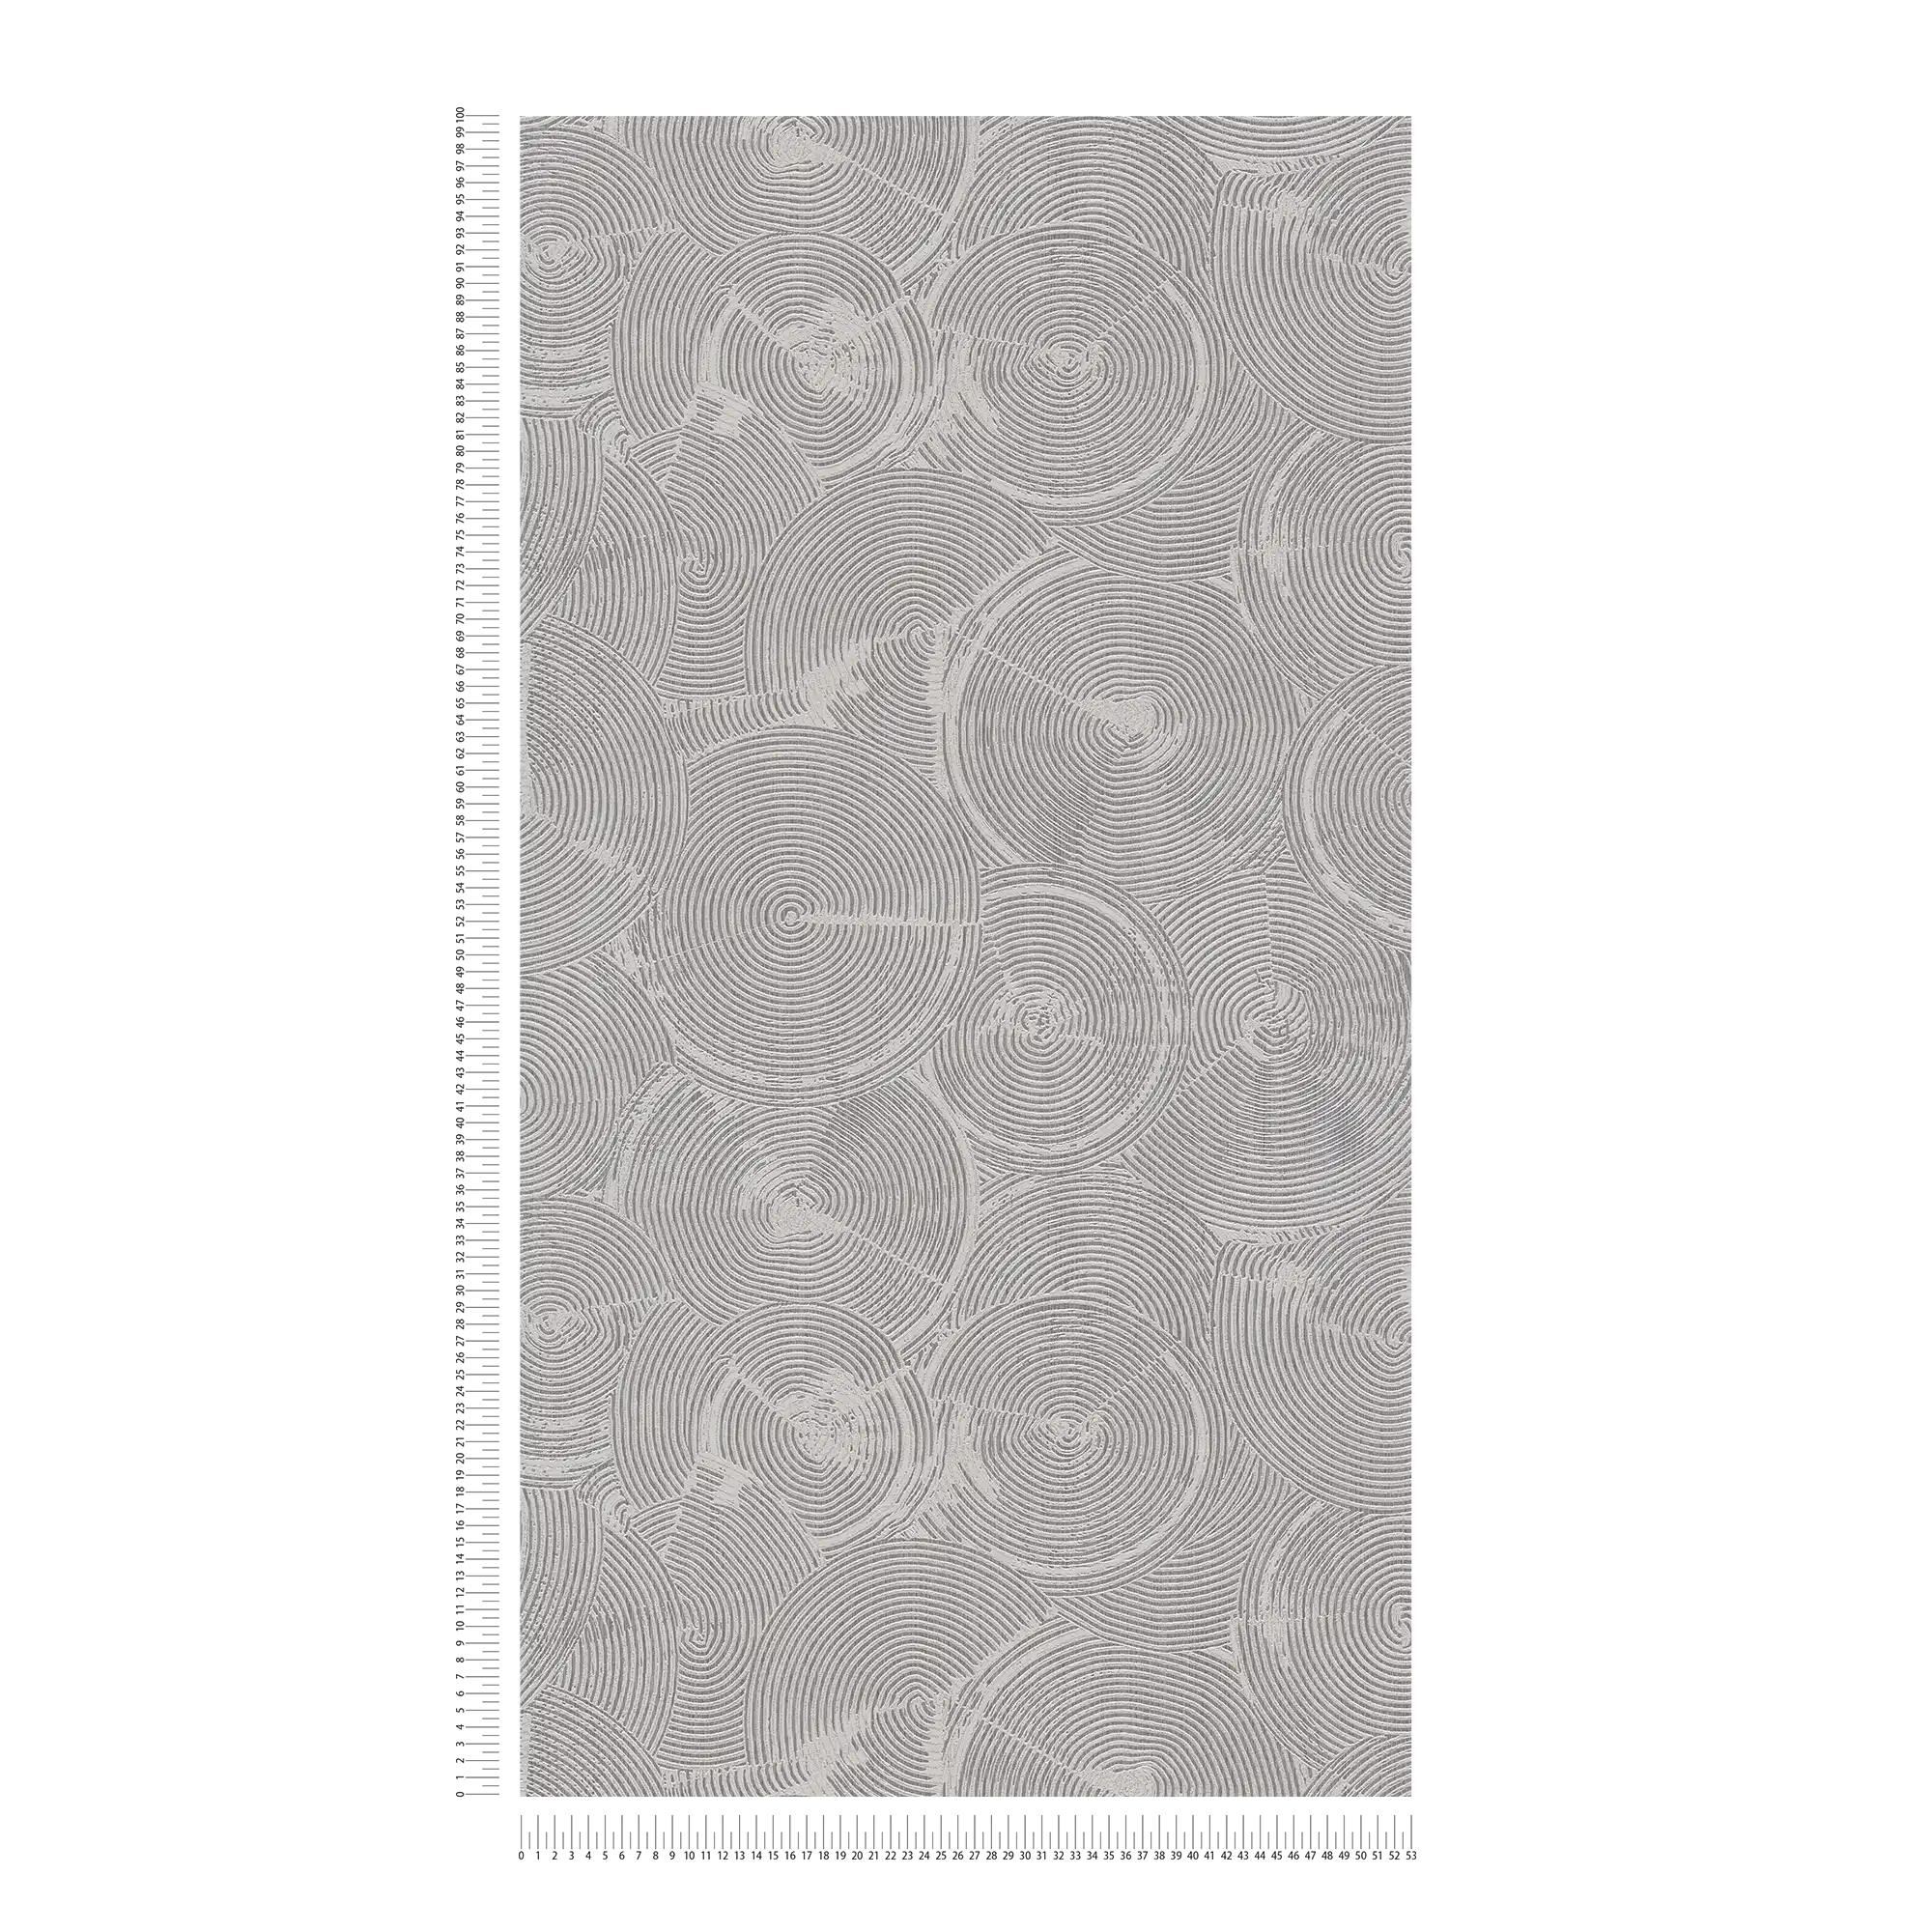             Papel pintado óptico de yeso con efecto metálico plateado - gris, metálico, blanco
        